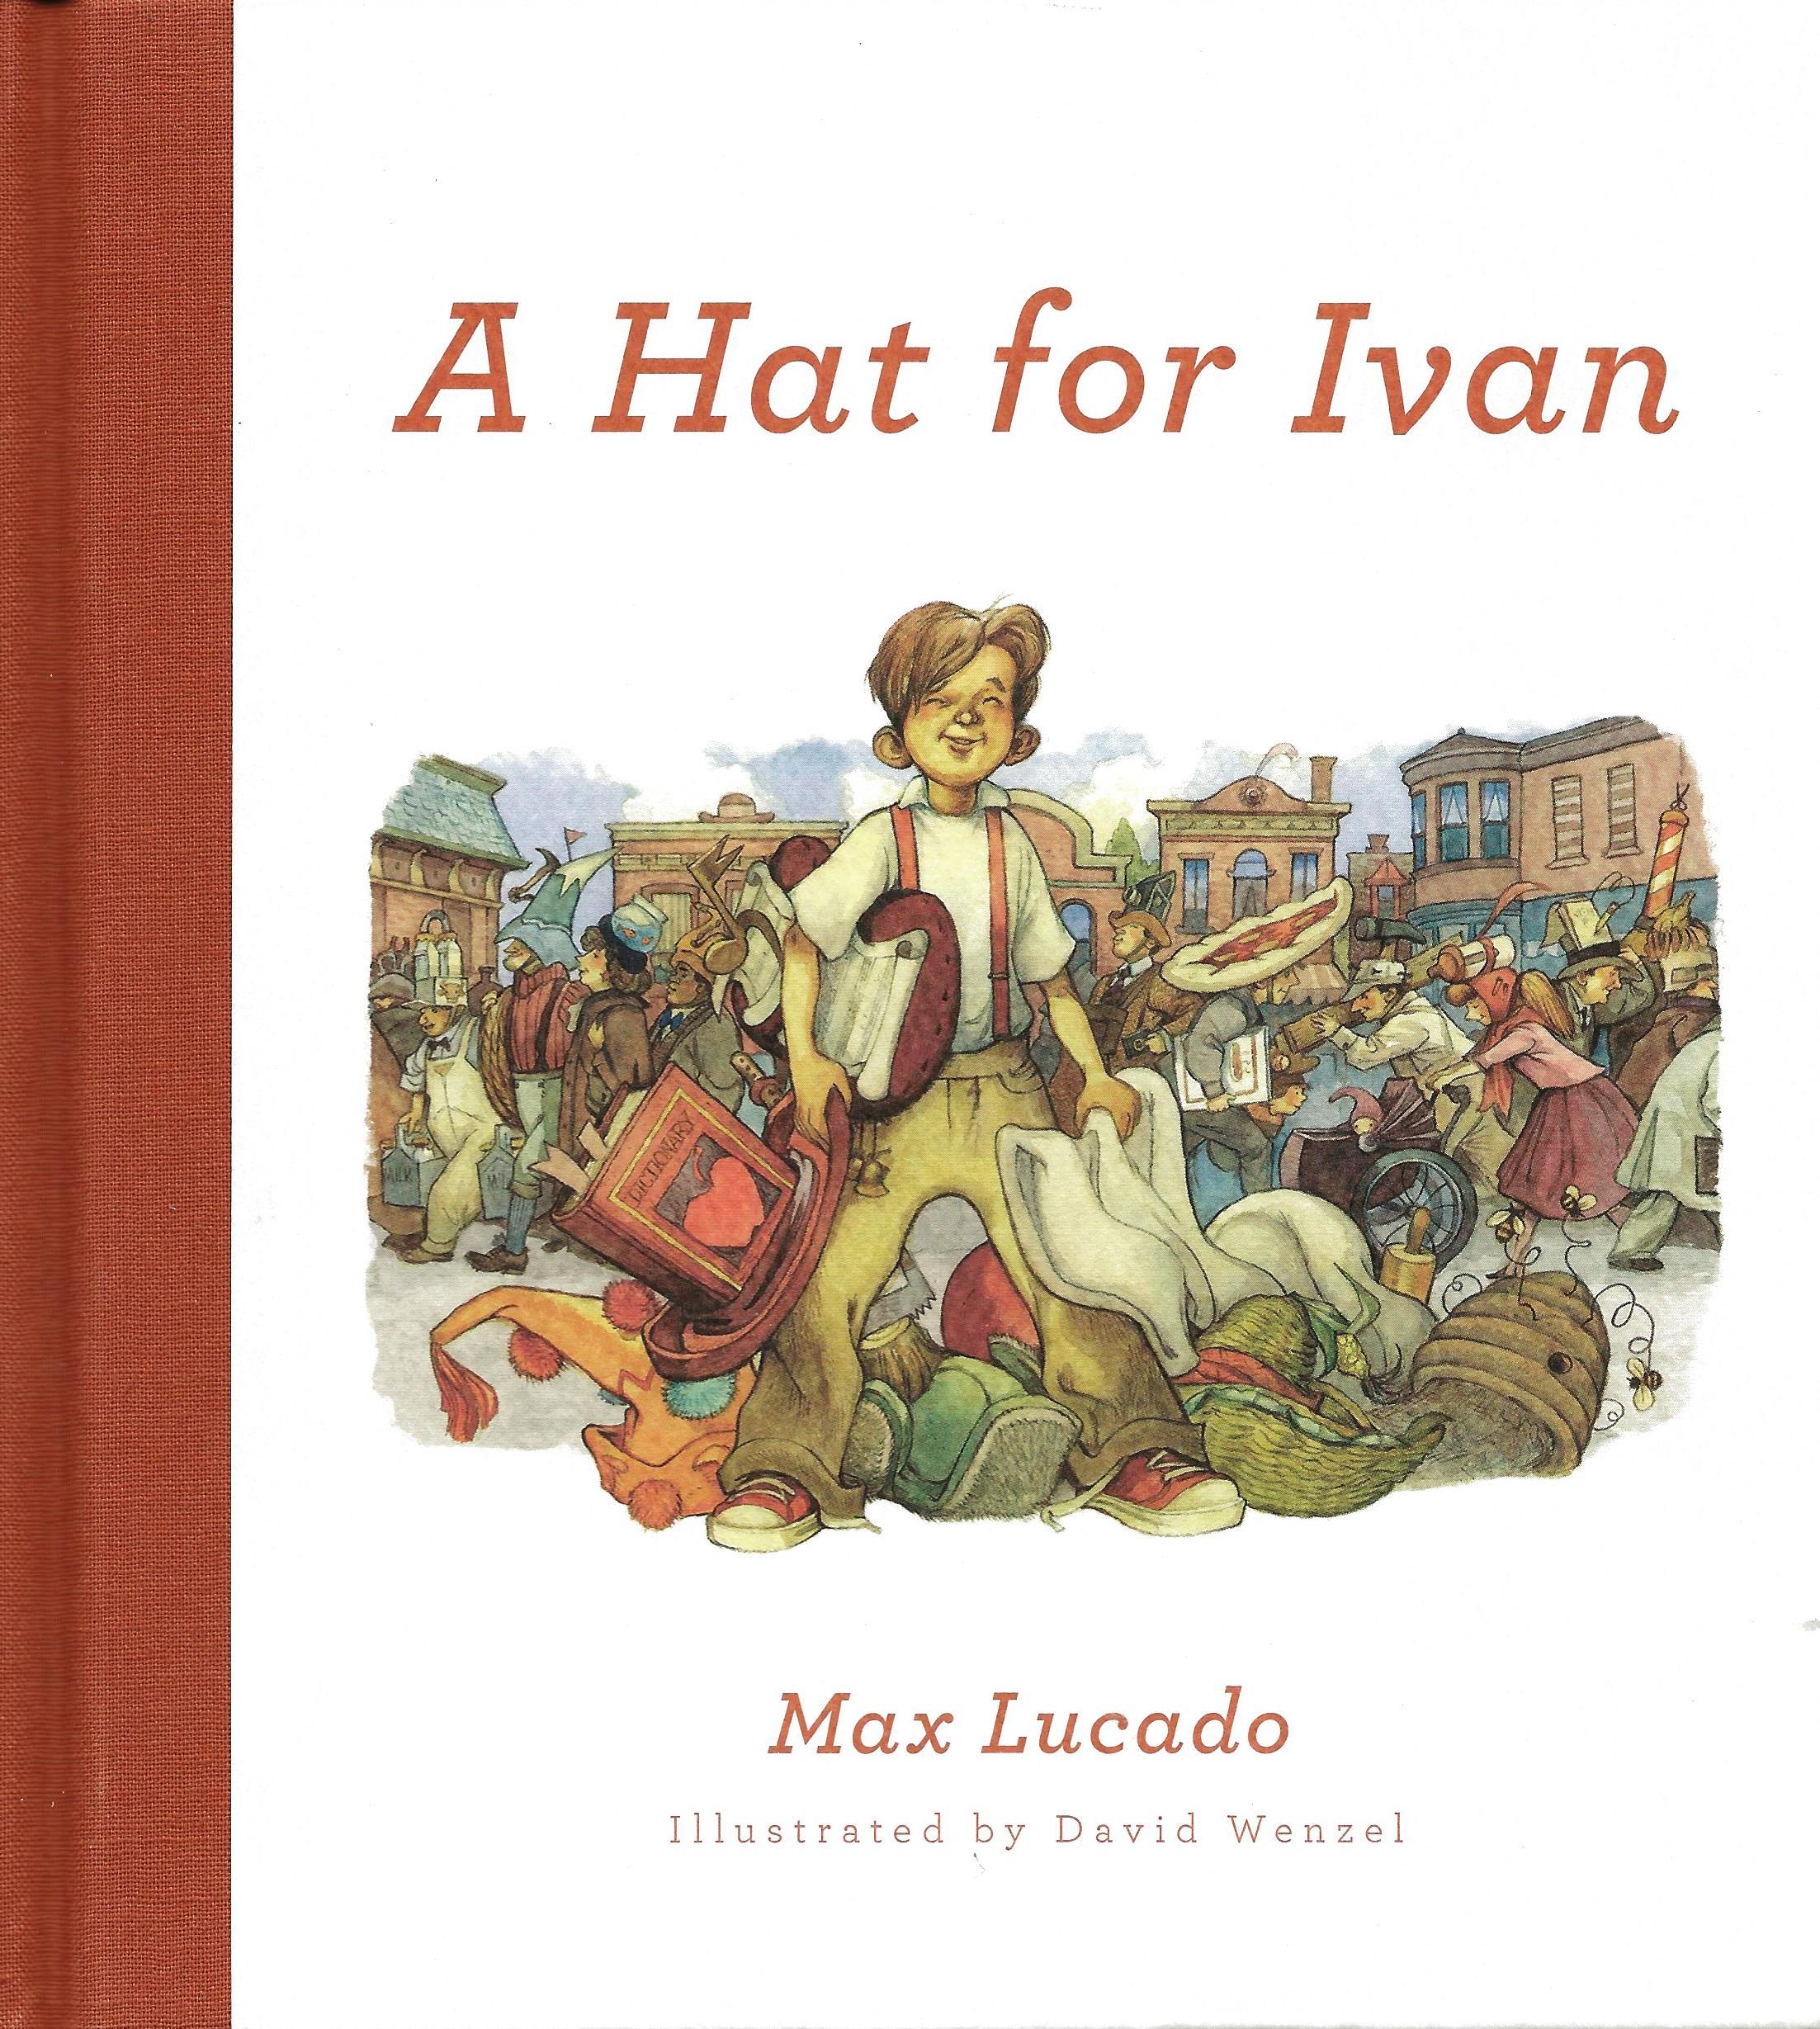 A HAT FOR IVAN Max Lucado